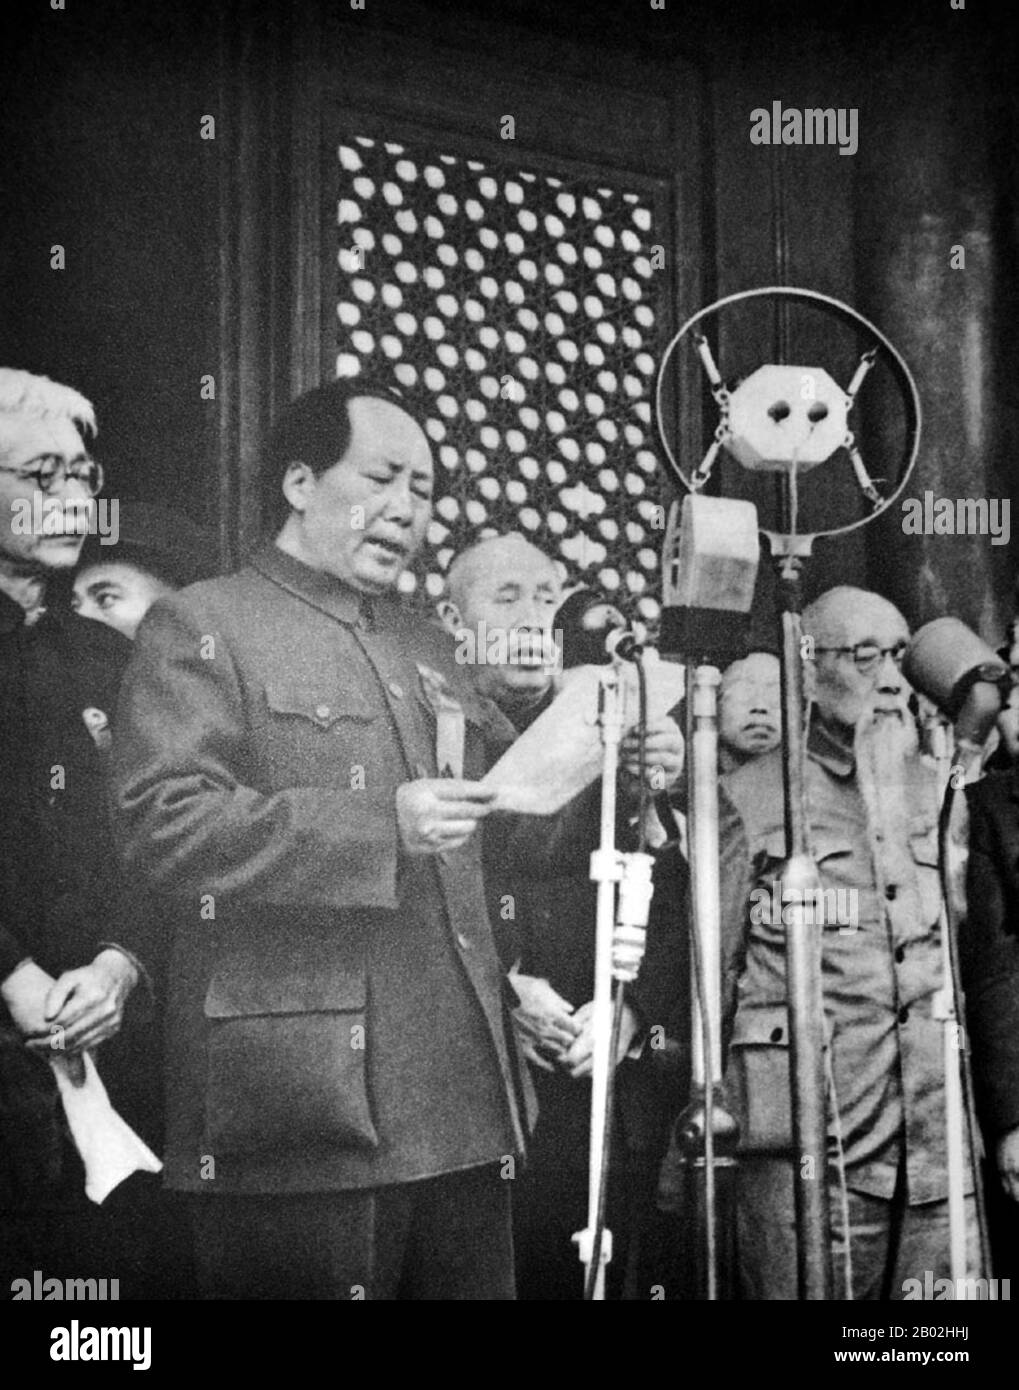 Mao Zedong, anche traslitterato come Mao Tse-tung (26 dicembre 1893 – 9 settembre 1976), è stato un rivoluzionario comunista cinese, guerriglia stratega, autore, teorico politico, e leader della Rivoluzione cinese. Comunemente chiamato Chairman Mao, fu l'architetto della Repubblica Popolare Cinese (PRC) dal suo insediamento nel 1949, e tenne il controllo autoritario sulla nazione fino alla sua morte nel 1976. Il contributo teorico del MAO al marxismo-leninismo, insieme alle sue strategie militari e al marchio delle politiche politiche, è ora conosciuto collettivamente come maoismo. Foto Stock